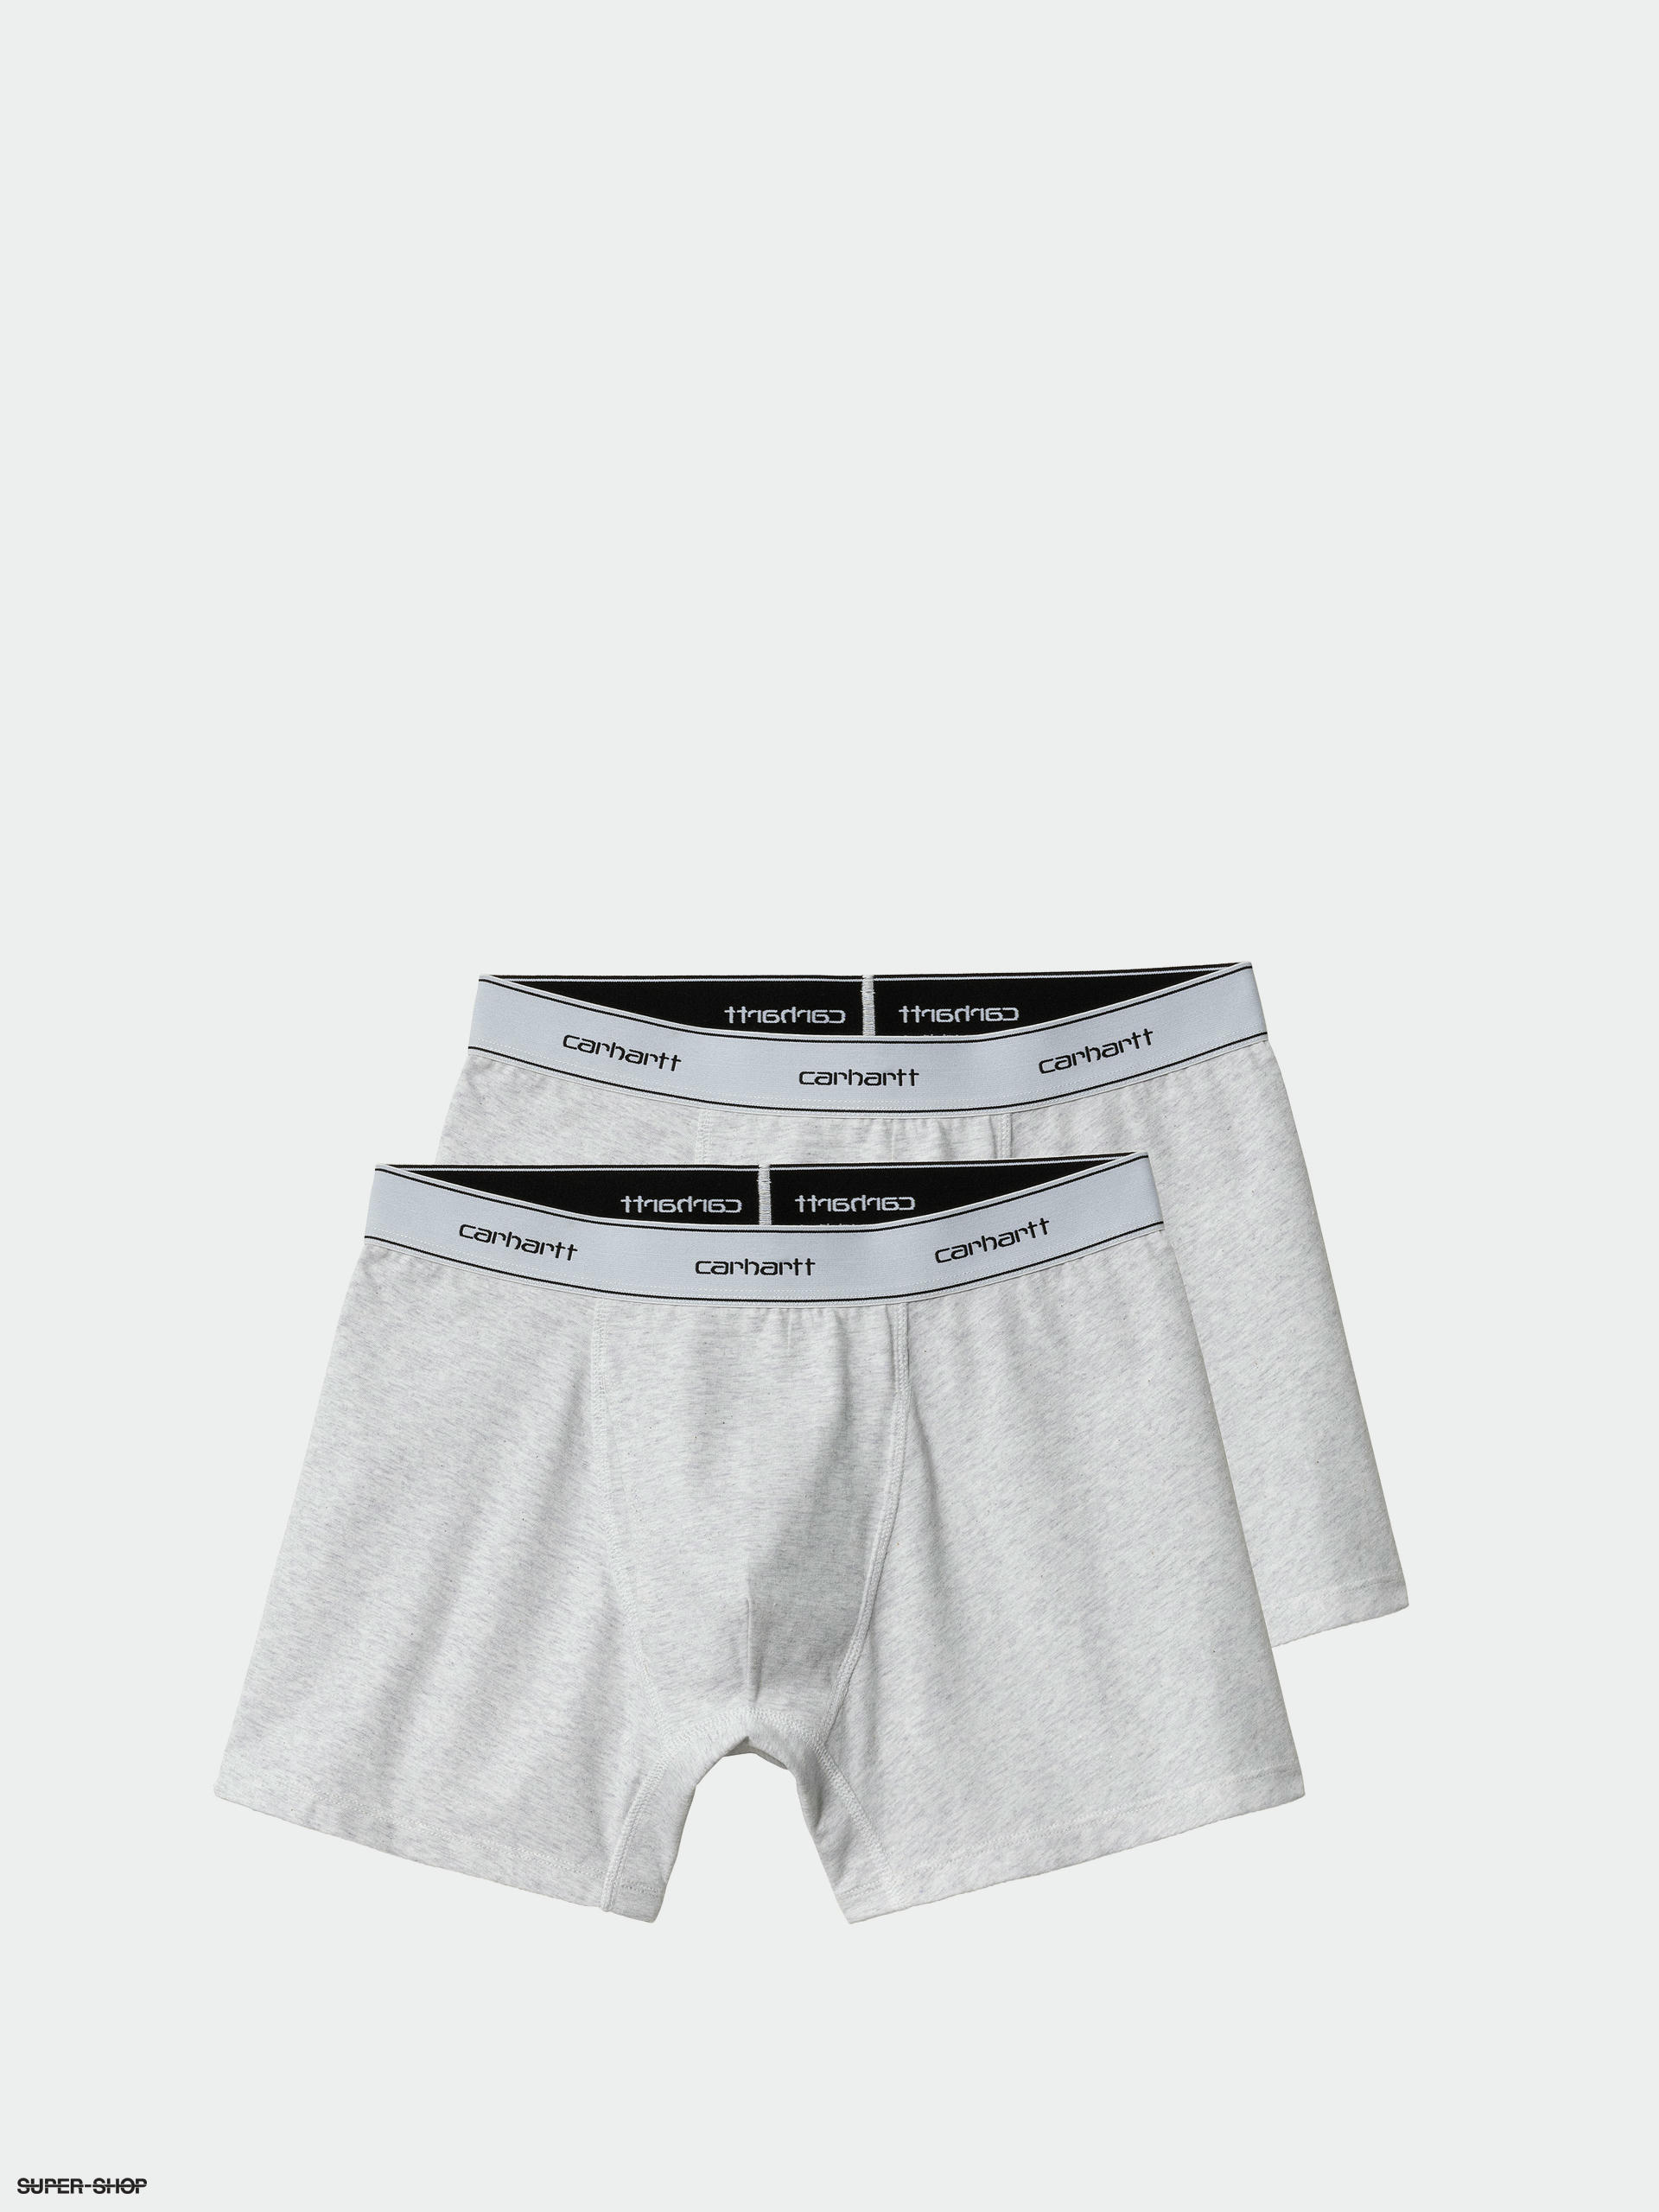 Carhartt WIP Cotton Trunks Underwear (ash heather/ash heather)